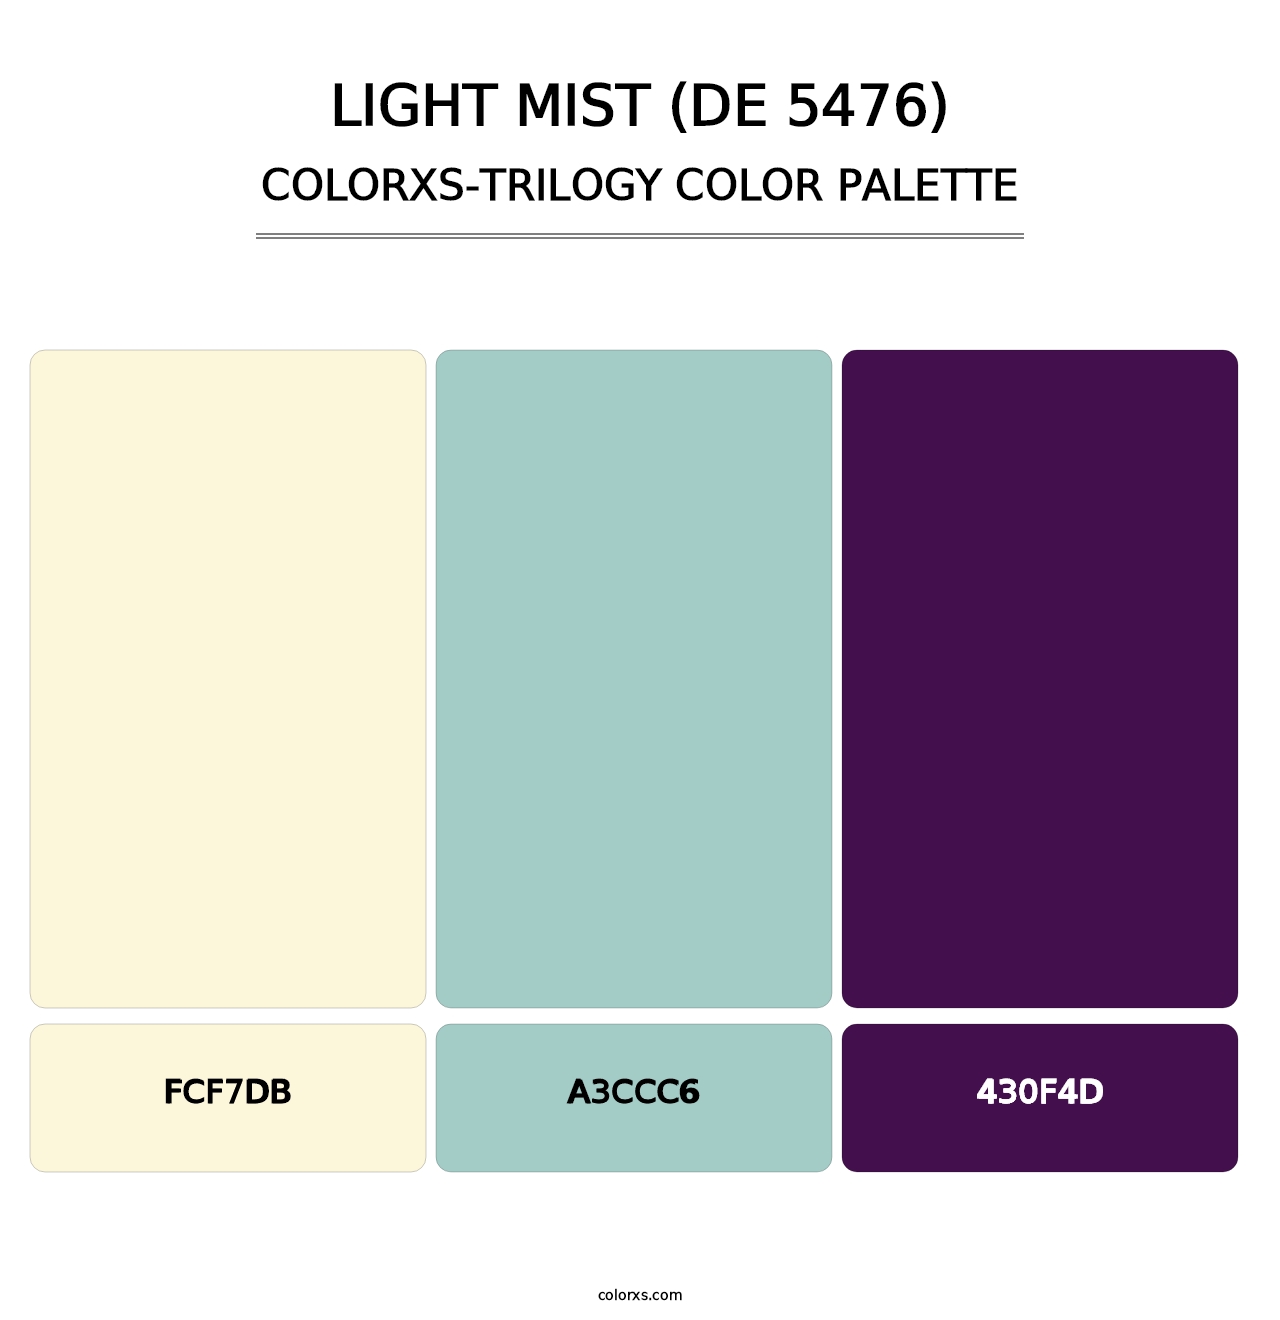 Light Mist (DE 5476) - Colorxs Trilogy Palette